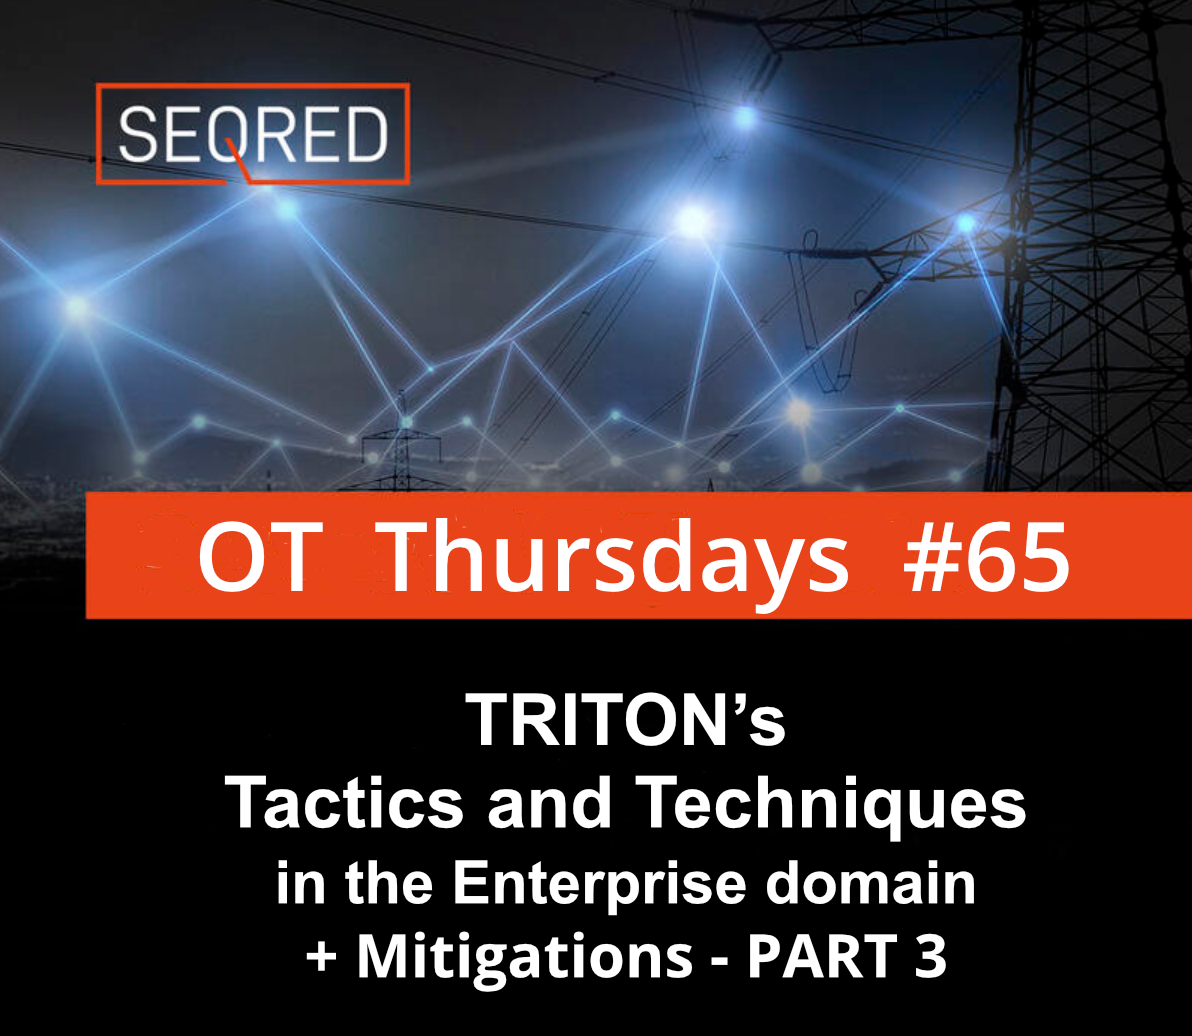 TRITON's tactics and technics